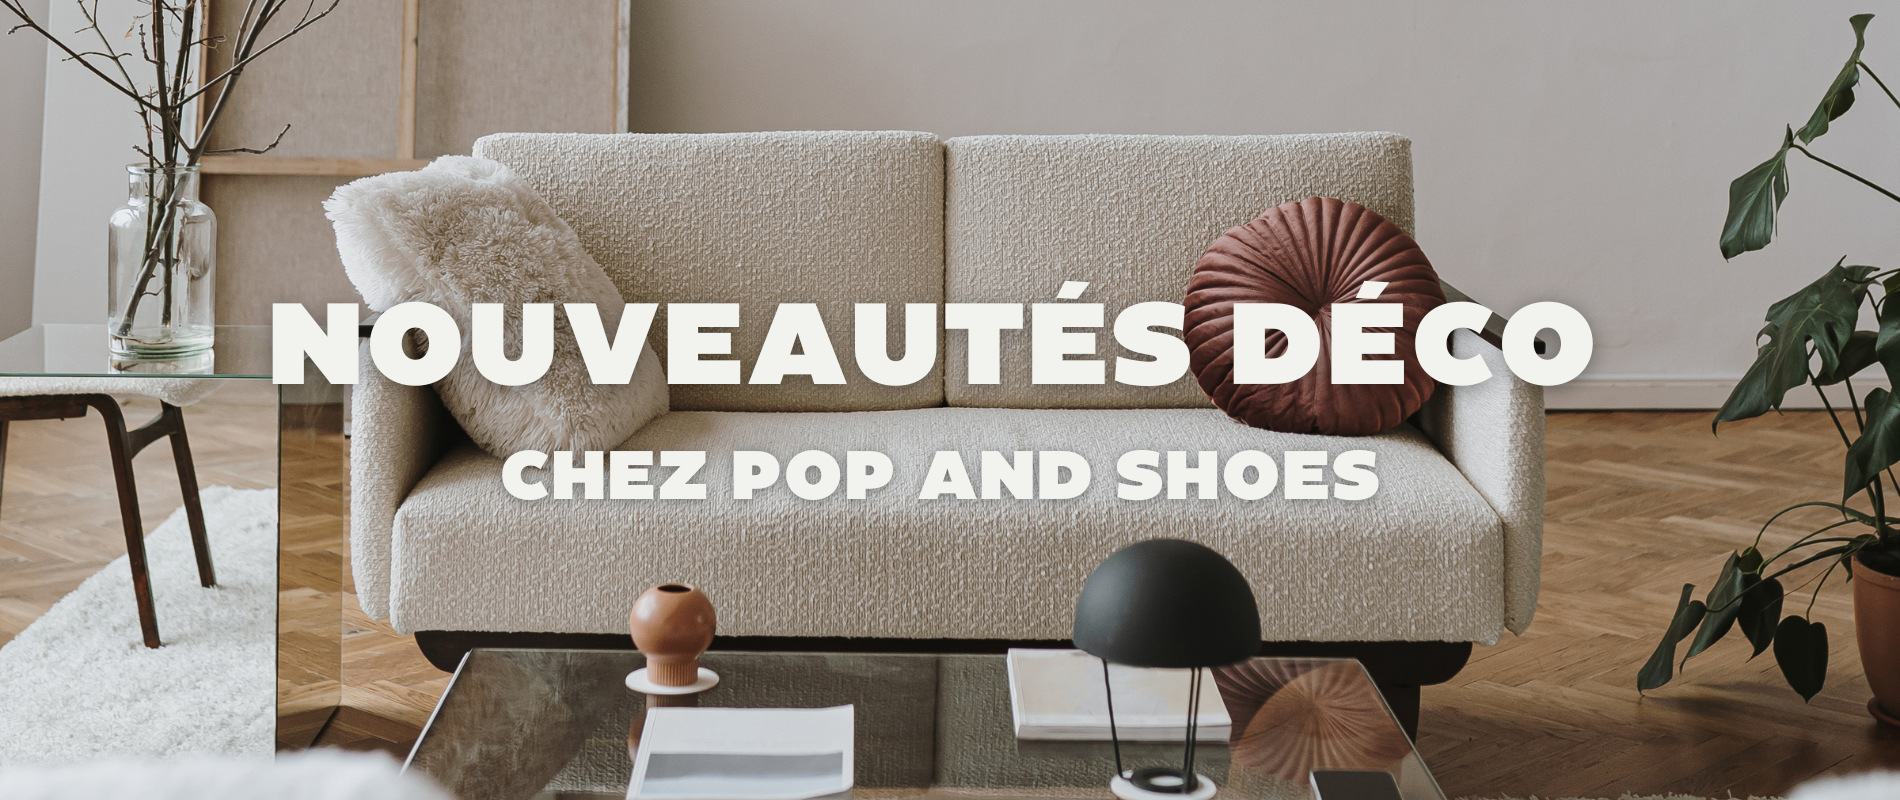 Nouveautés décoration chez pop and shoes 